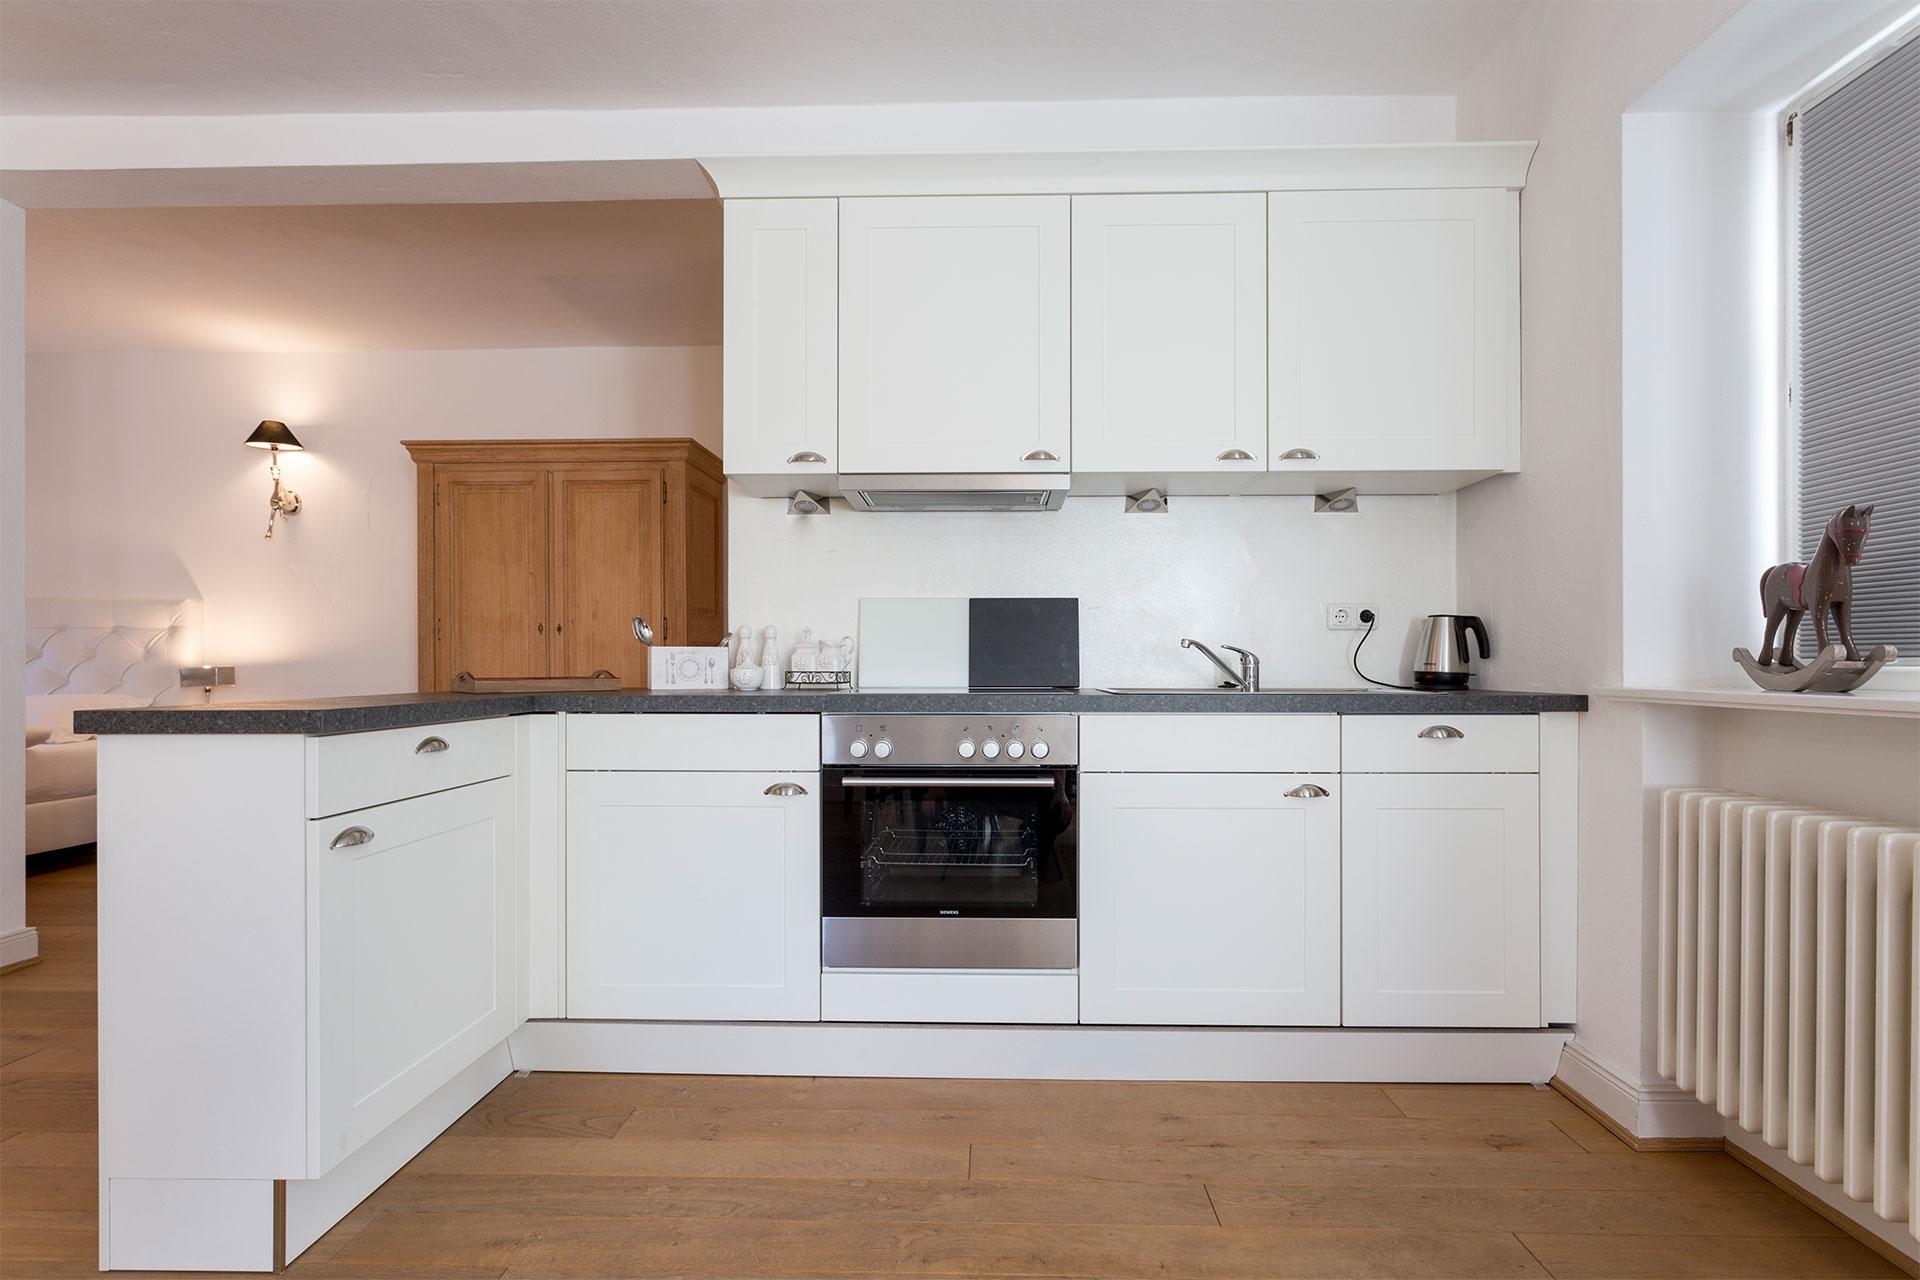 Jede Wohnung hat eine voll ausgestattete Küche mit Geschirrspüler, Kühlschrank, Rosenthal Porzellan uvm.